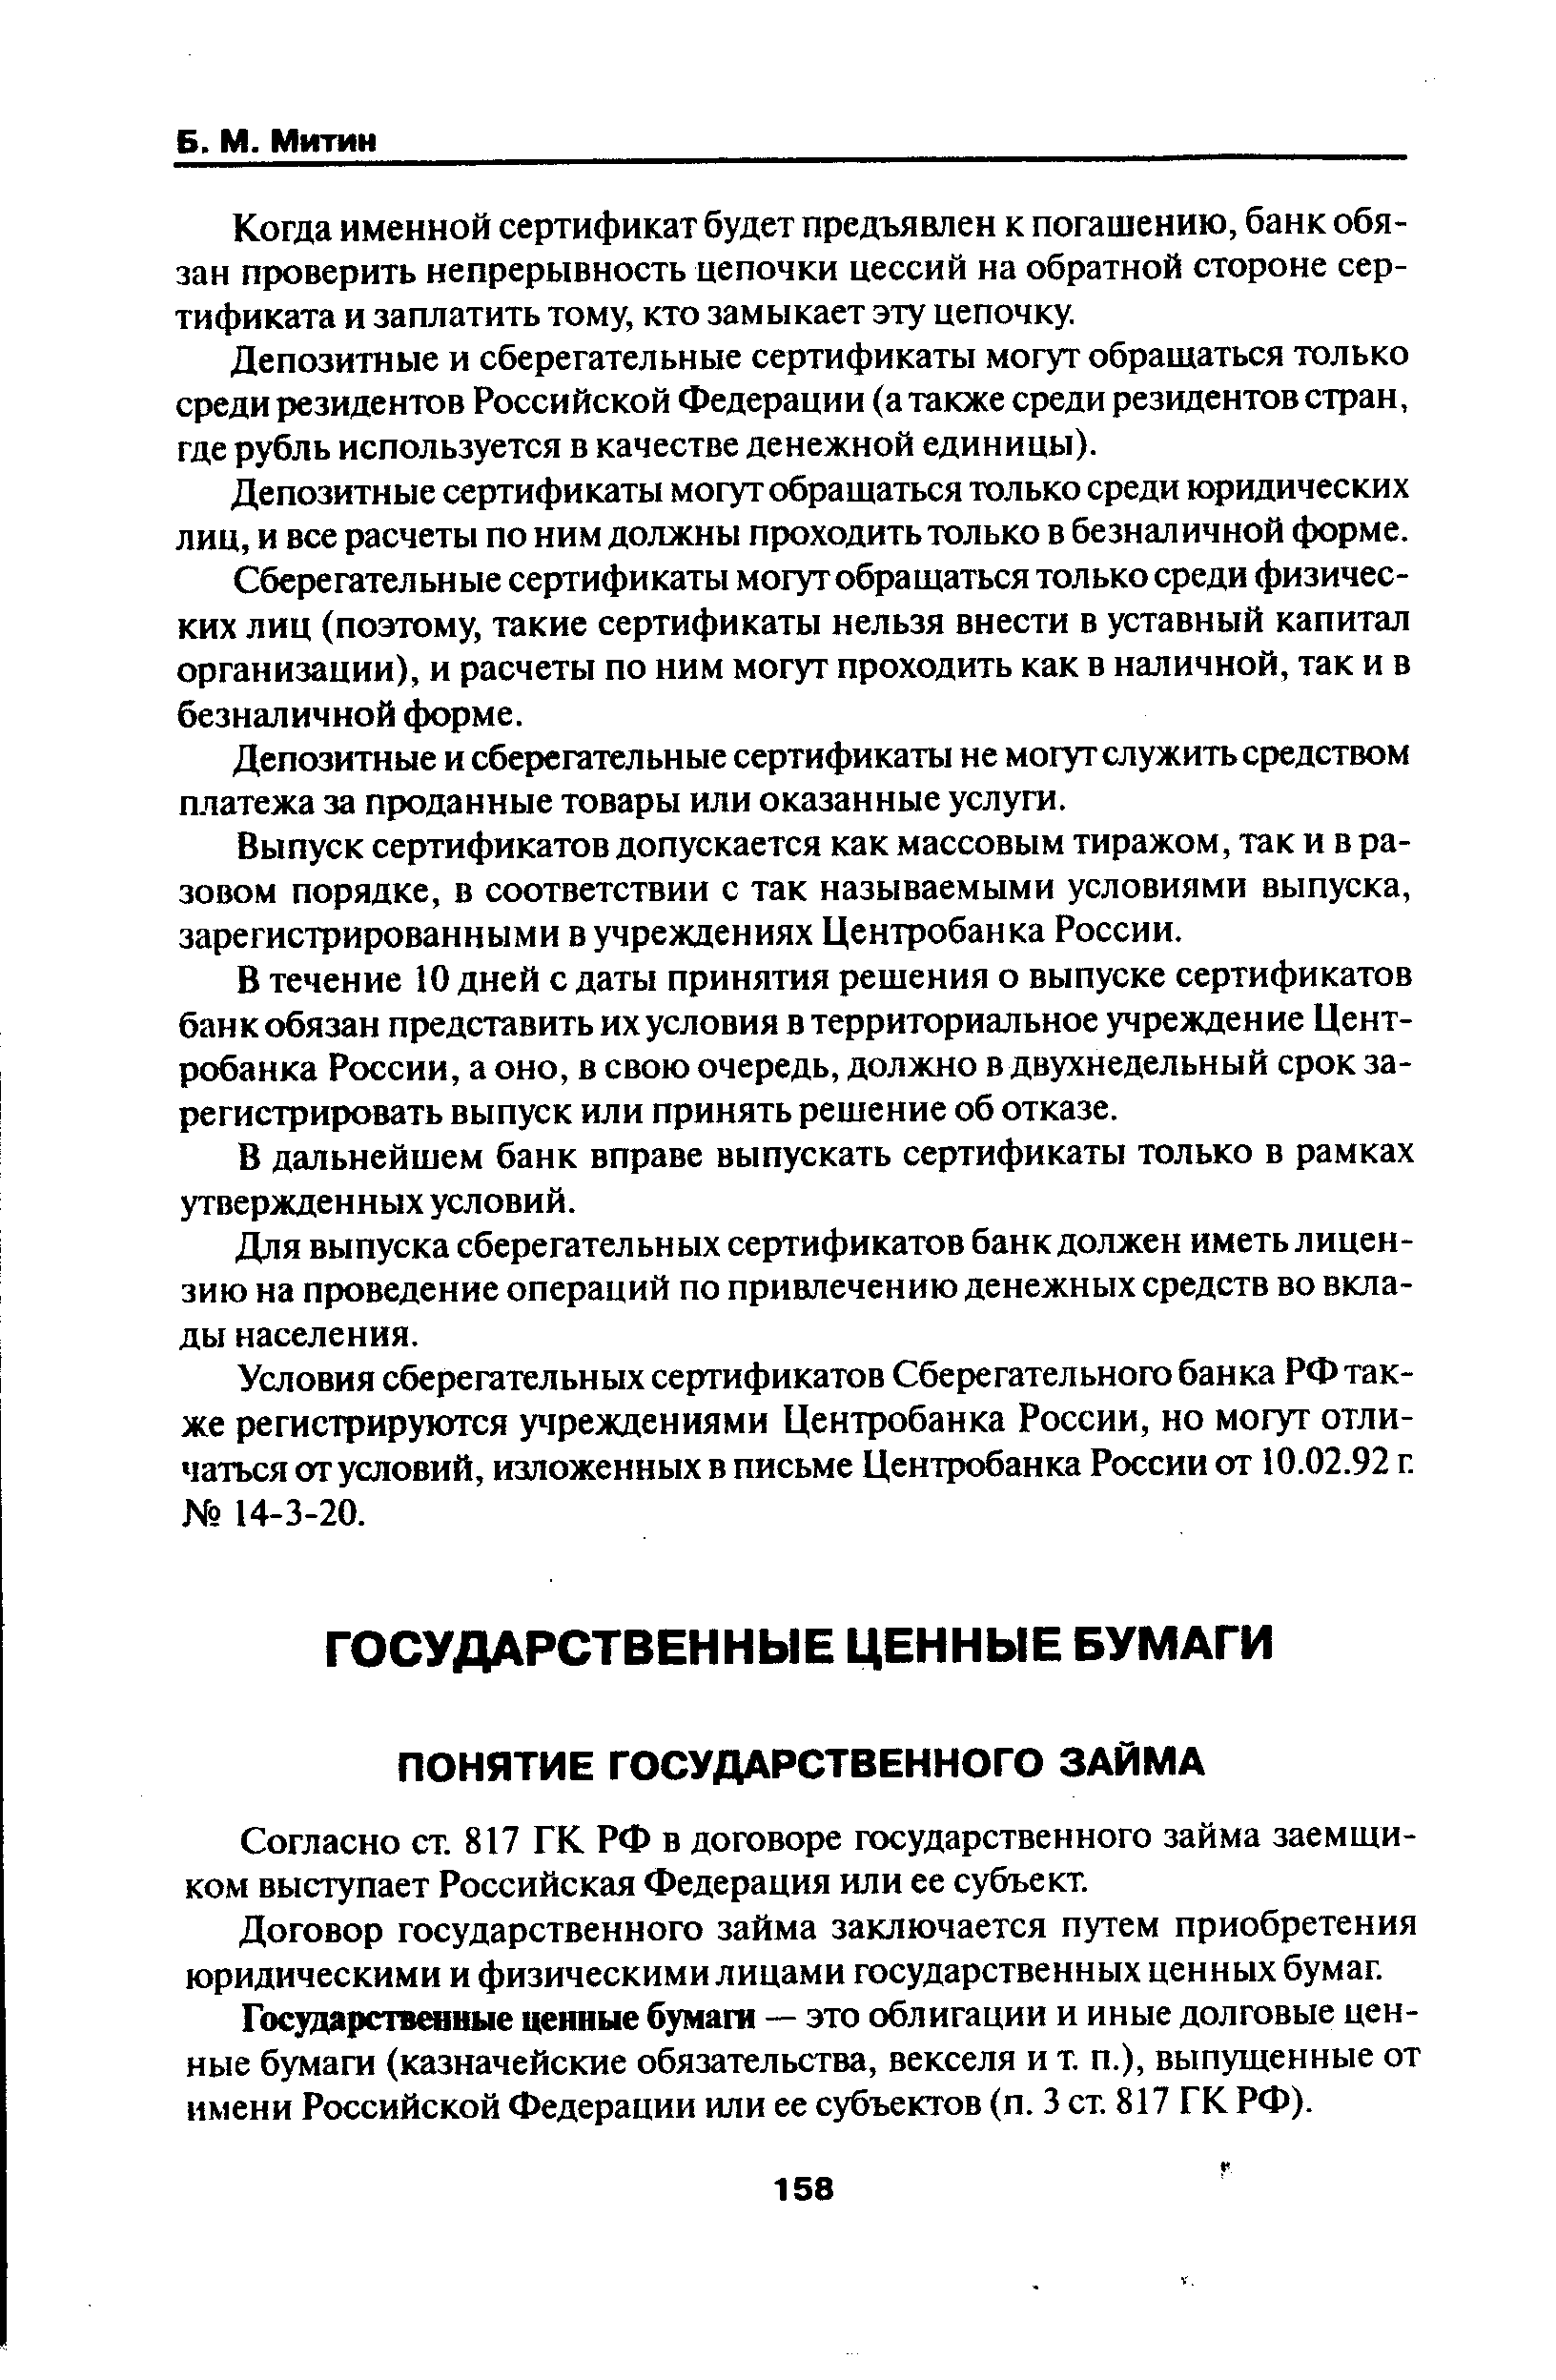 Согласно ст. 817 ГК РФ в договоре государственного займа заемщиком выступает Российская Федерация или ее субъект.
